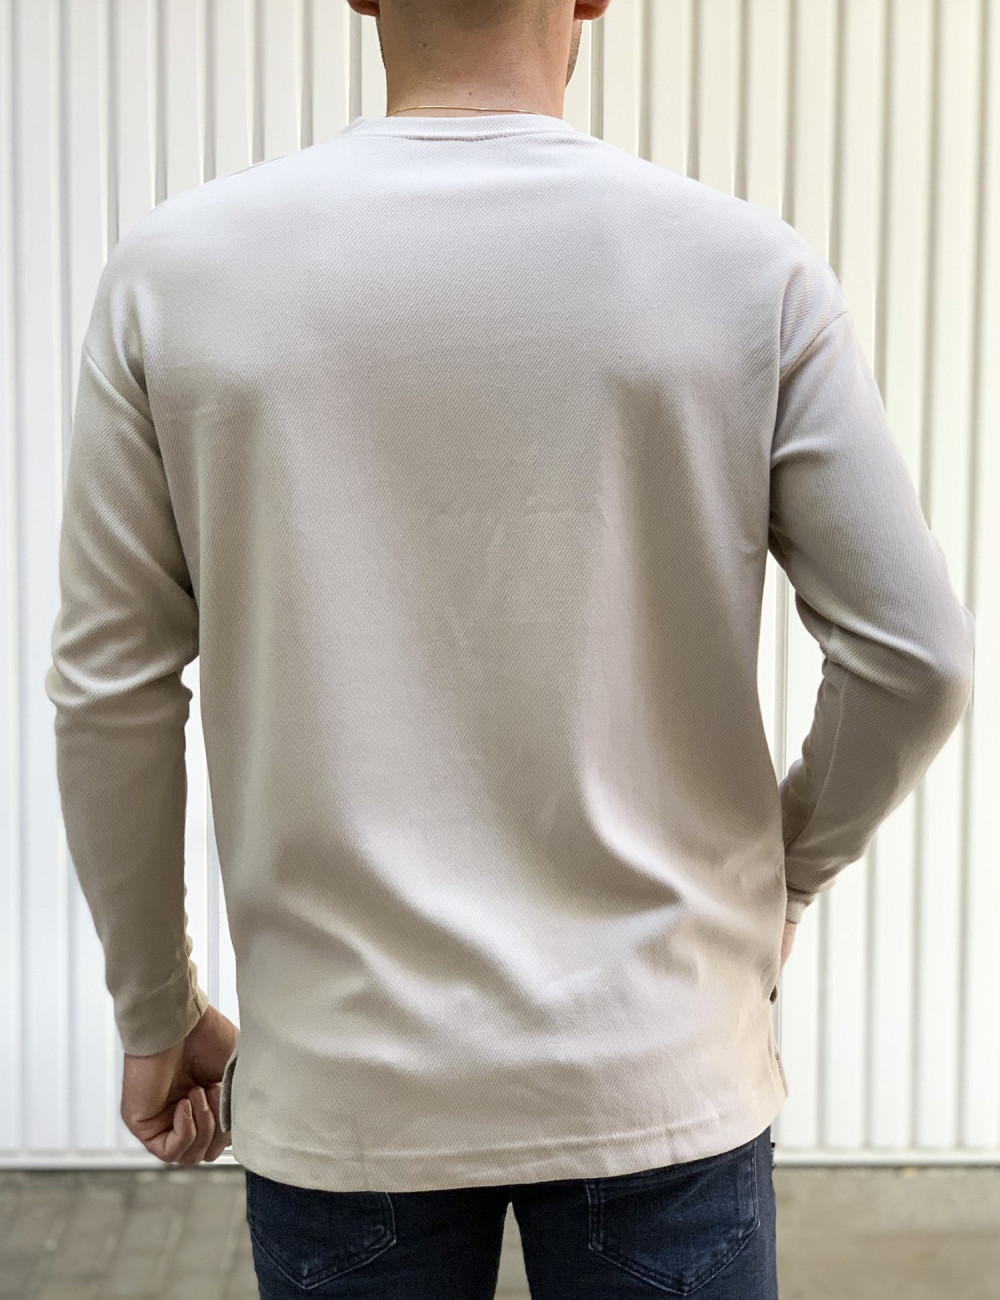 Ανδρική μπεζ μακρυμάνικη μπλούζα με ανάγλυφο ύφασμα 1136B